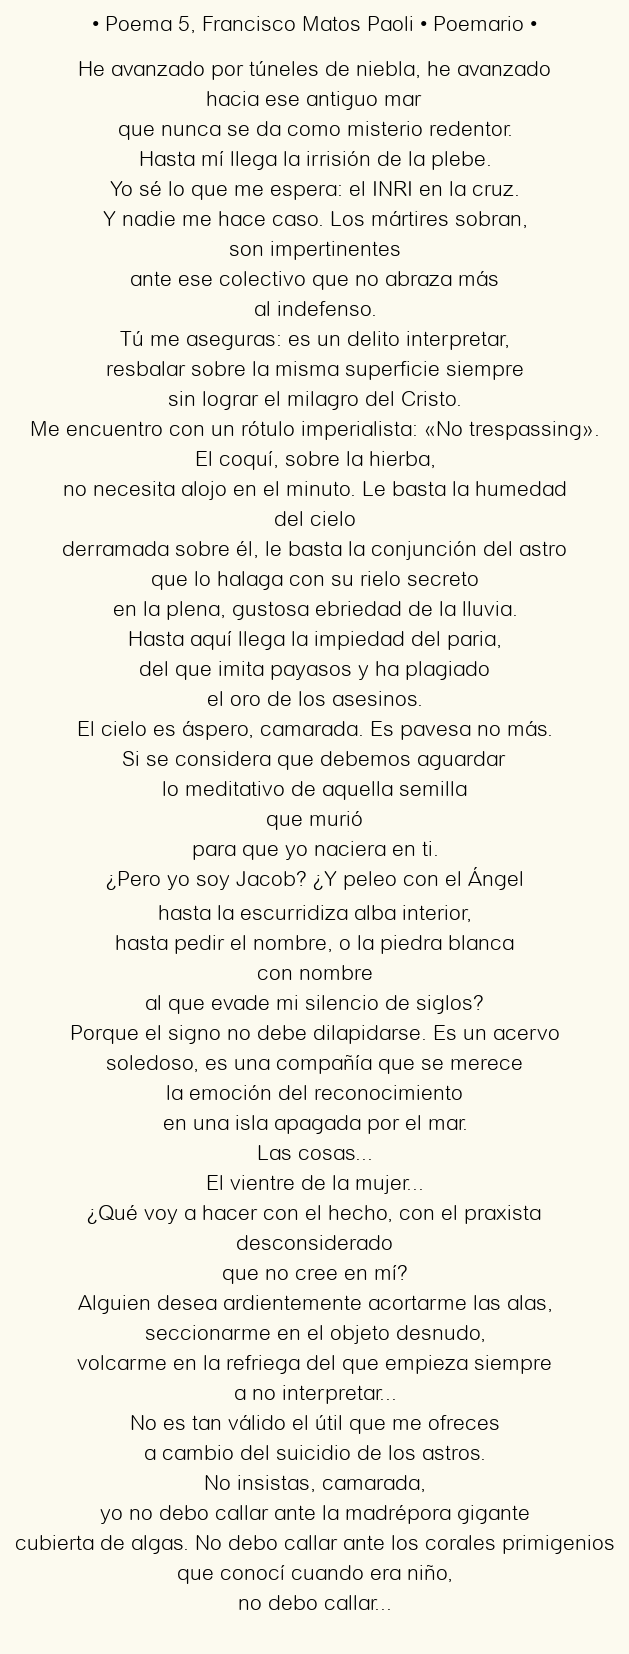 Imagen con el poema Poema 5, por Francisco Matos Paoli